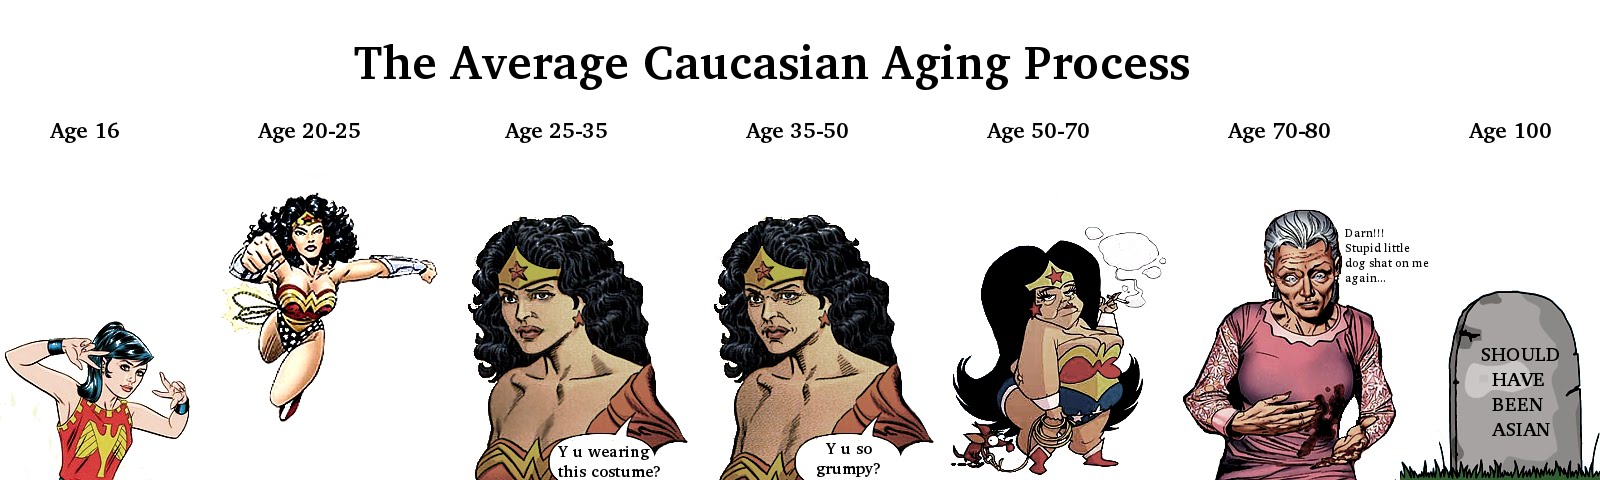 Asian women aging comic